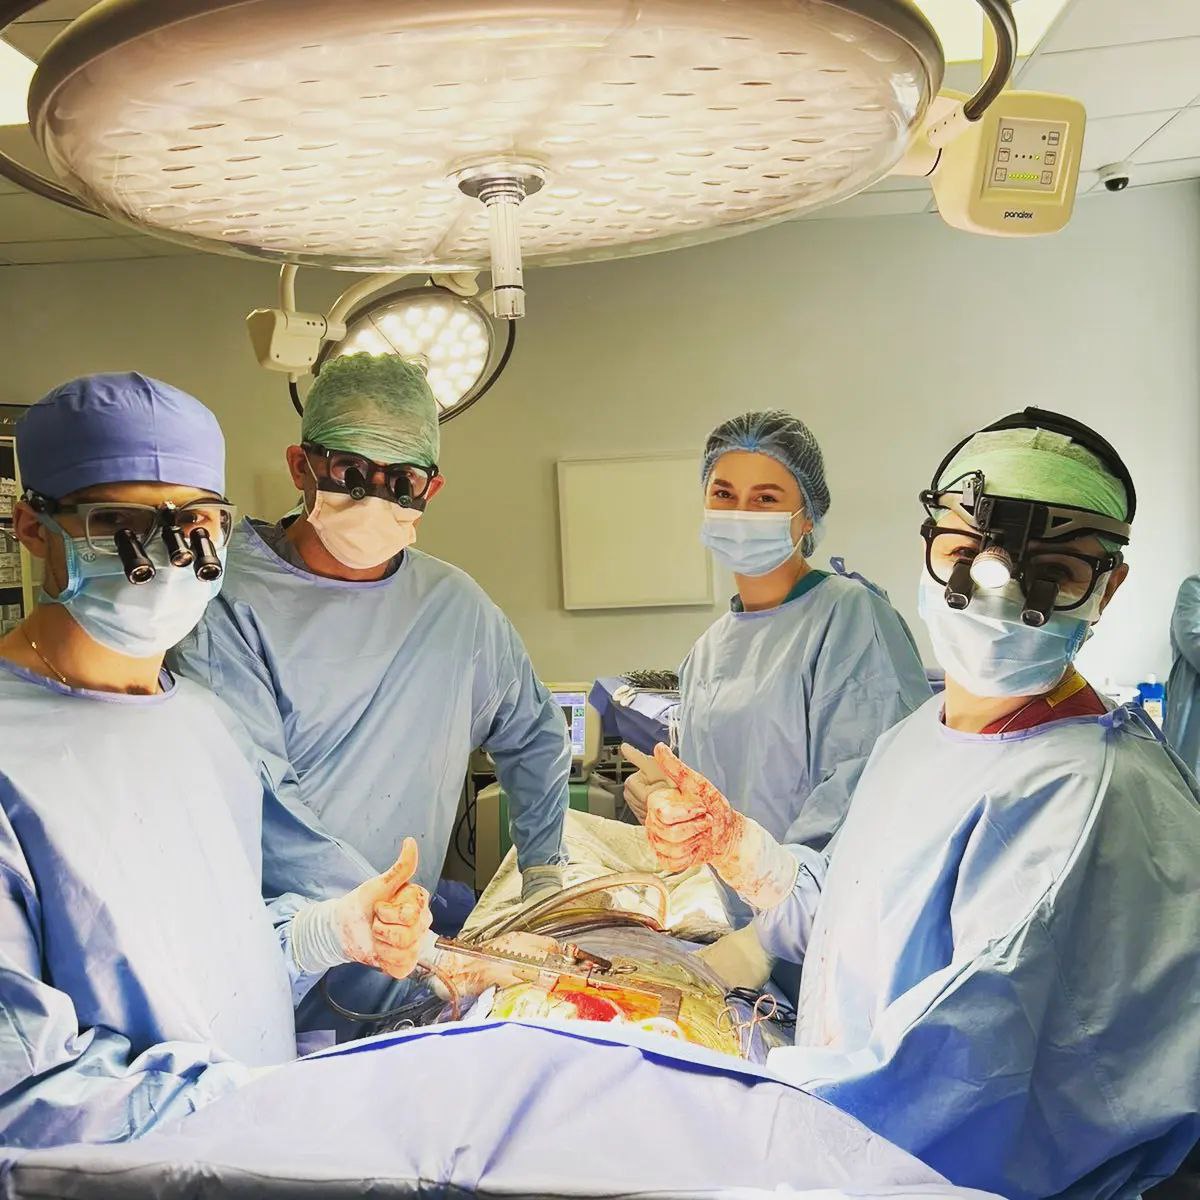 Франківські лікарі разом з польським професором успішно провели сім складних операцій для людей з вадами серця (ФОТО)